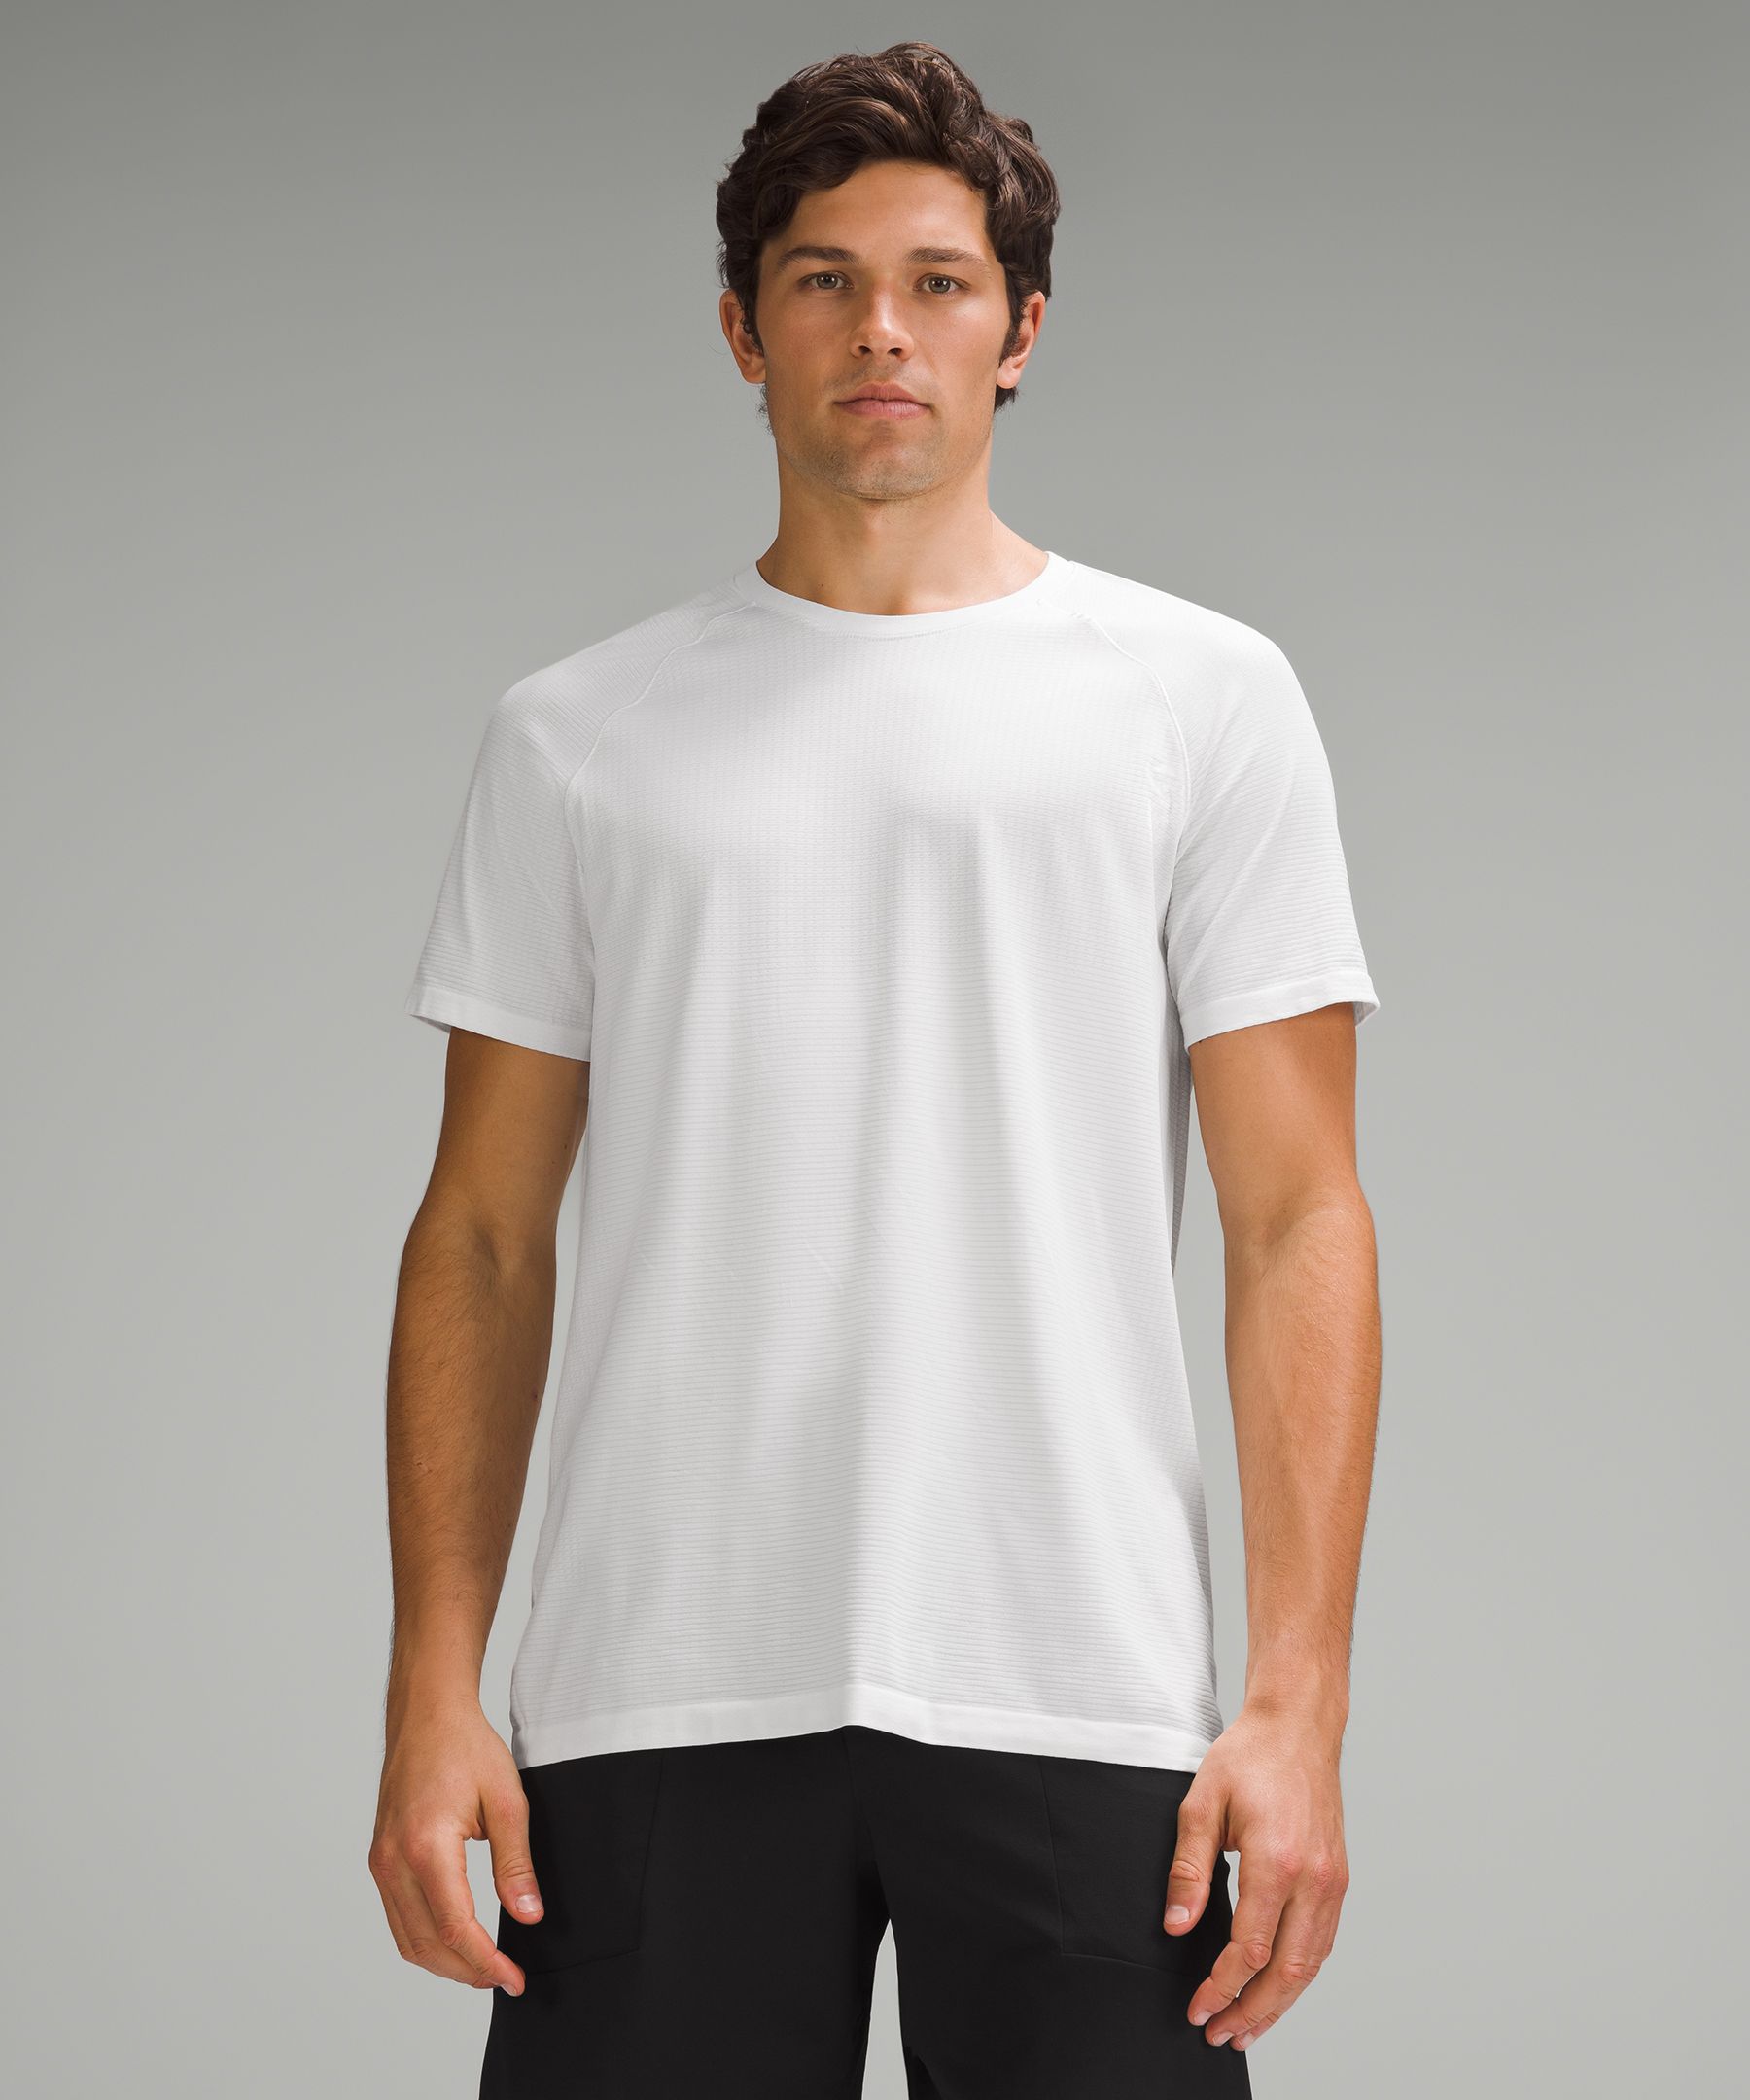 Men's Regular Fit Seamless Tennis T-Shirt - Men's T-shirts - New